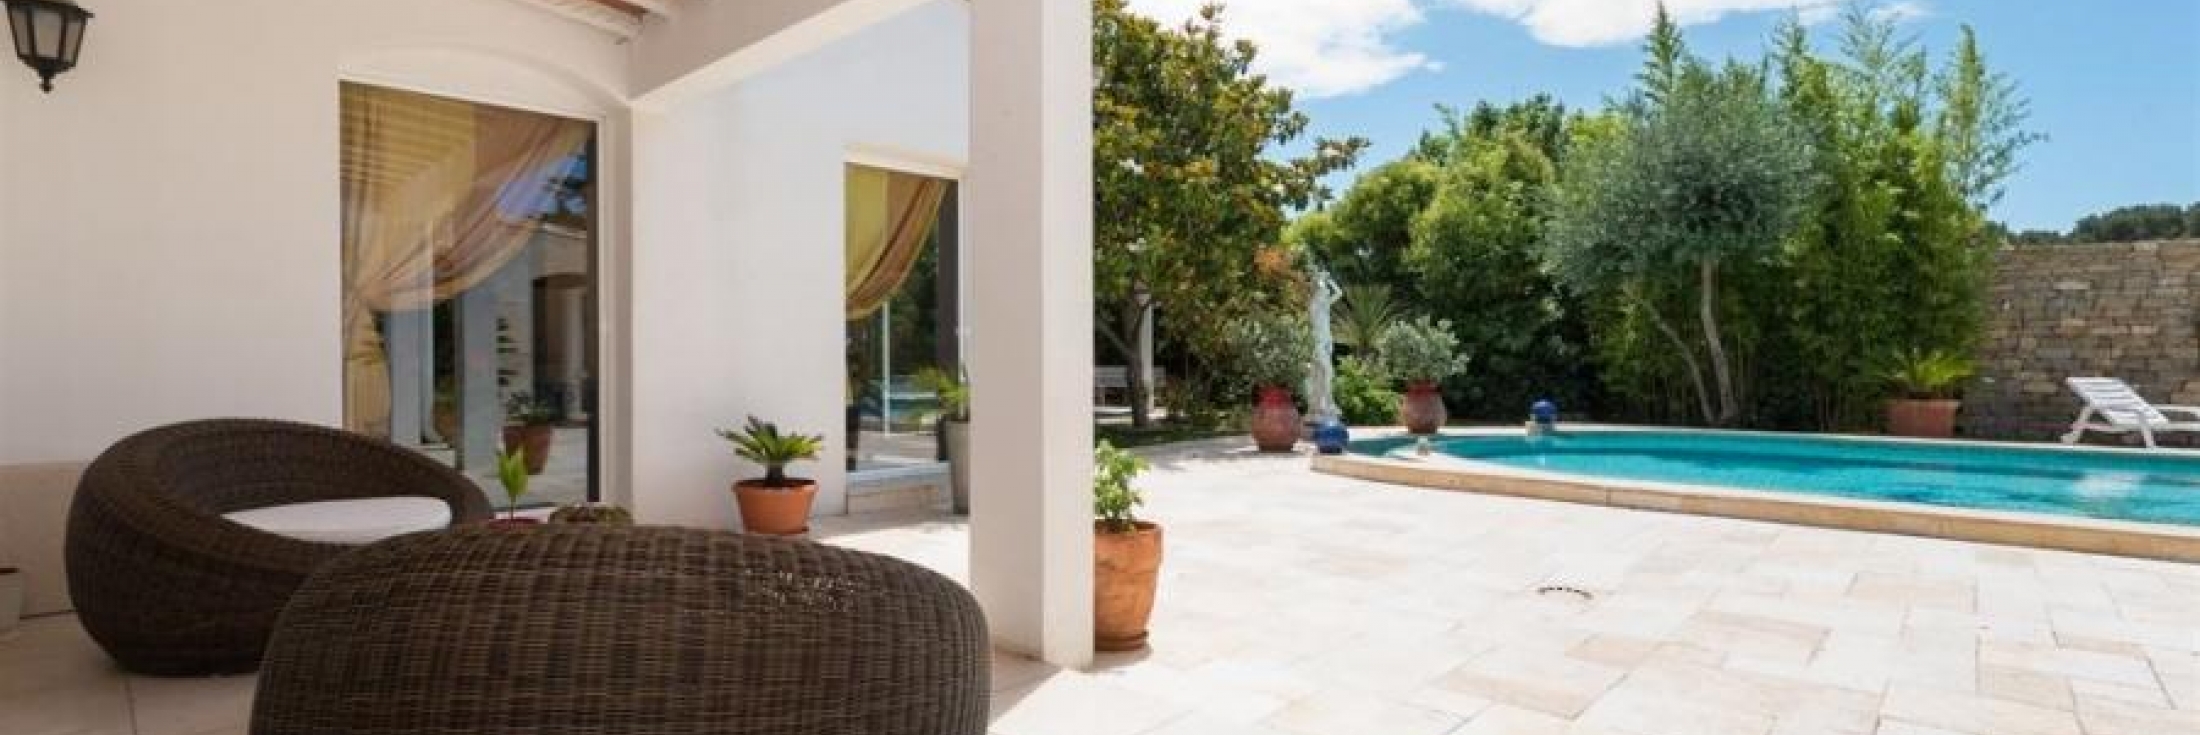 Villa de luxe à vendre avec piscine à Sanary sur Mer : quartier Beaucours